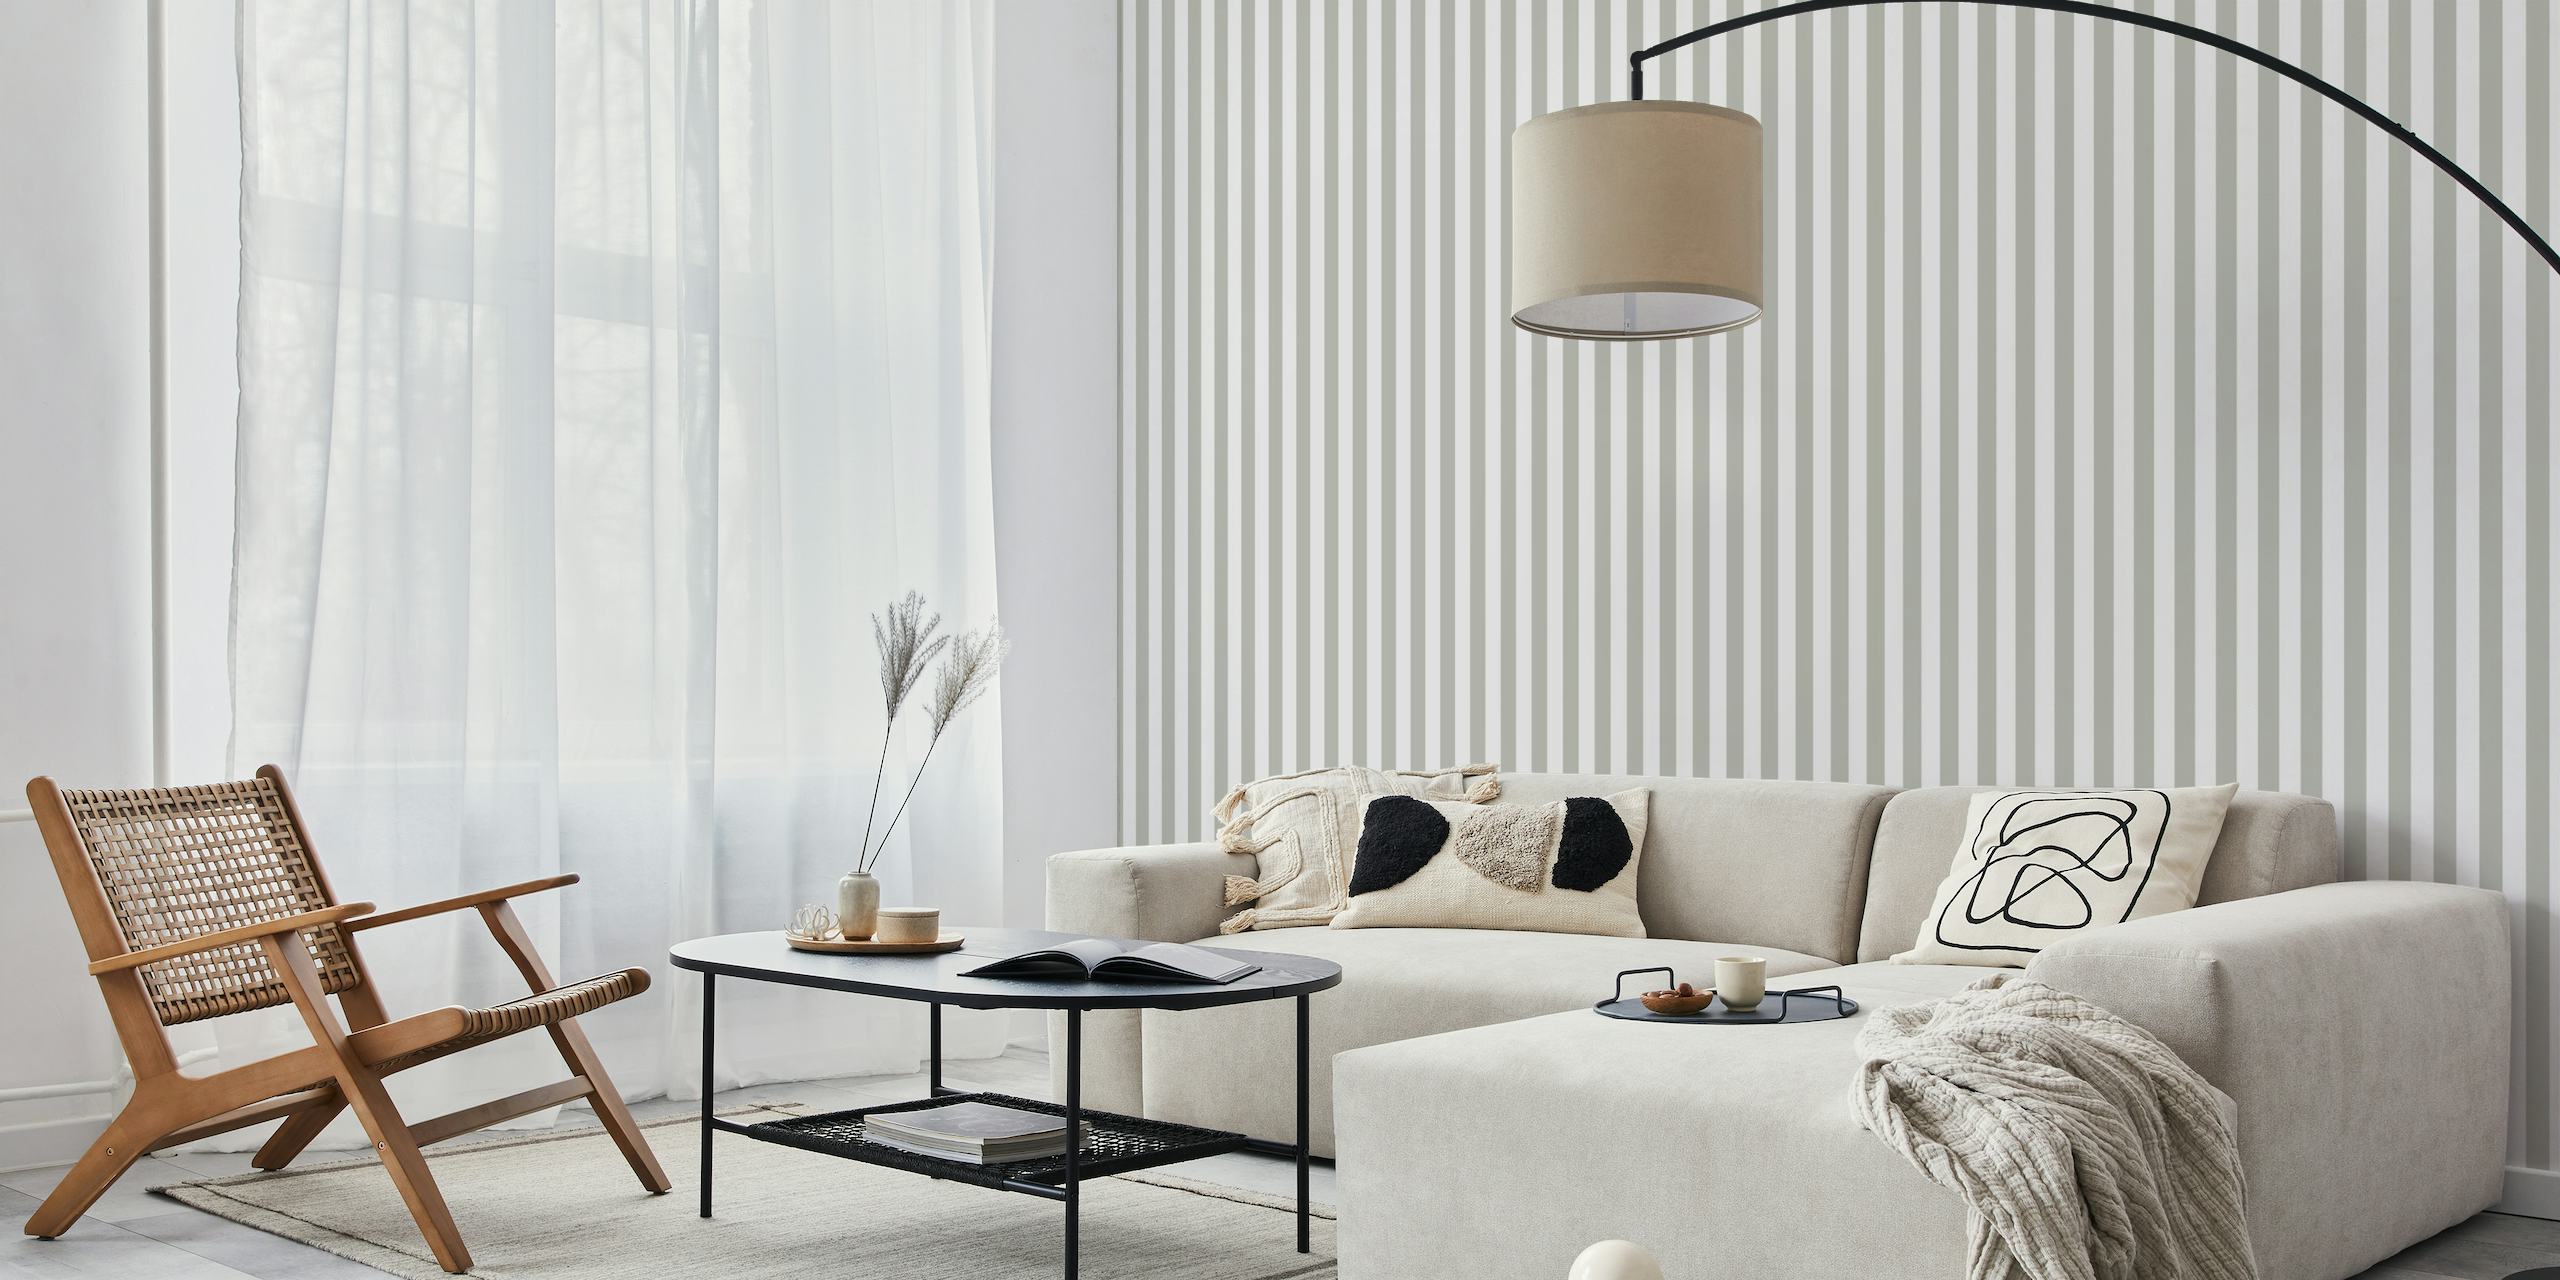 Scandi Stripes - Grijze fotobehang met subtiele grijze en witte verticale strepen voor een moderne, minimalistische inrichting